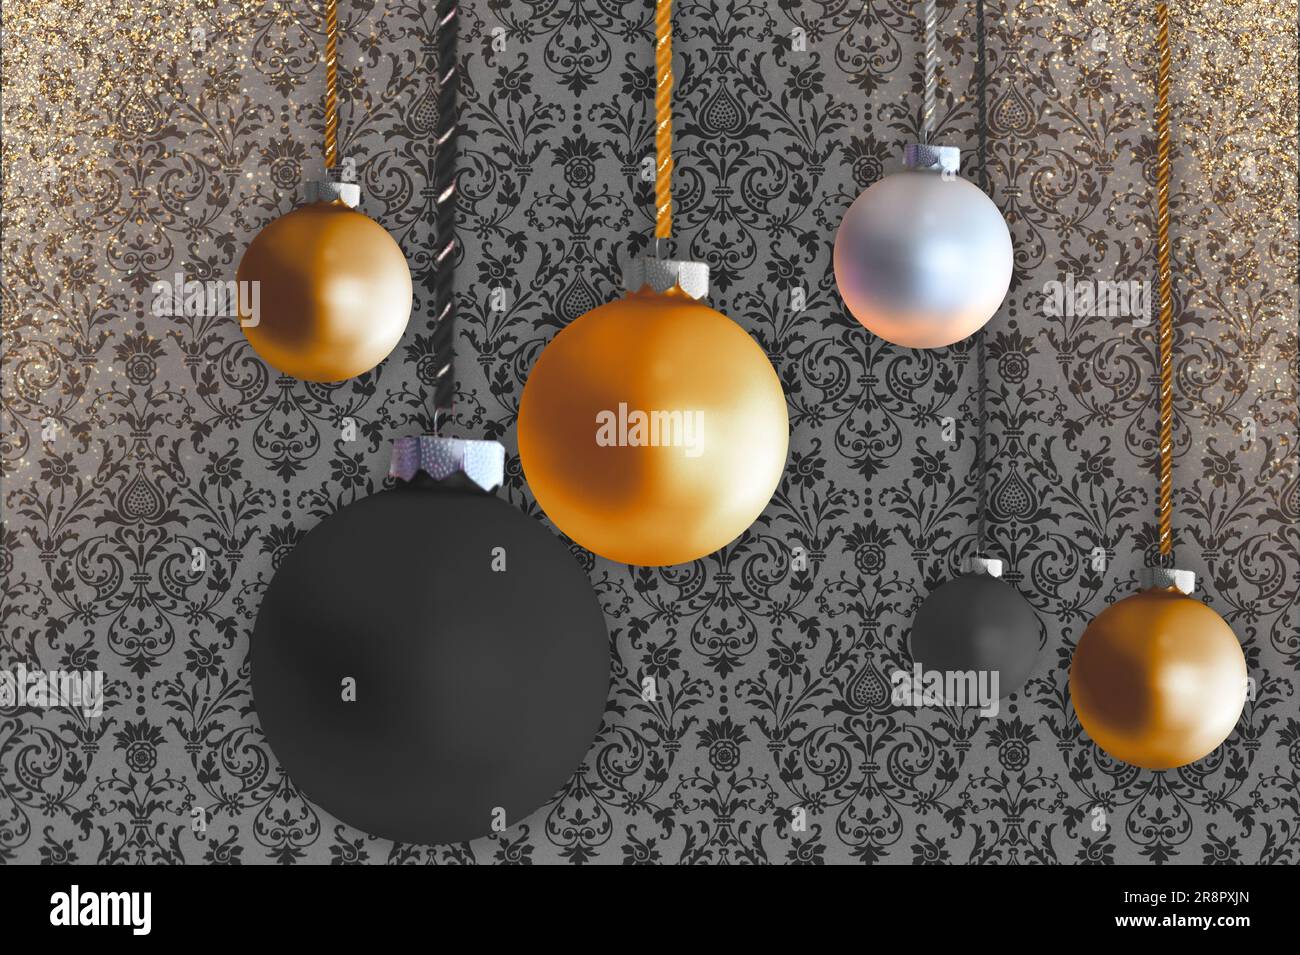 Weihnachtsbäume in Bronze, Schwarz und Weiß hängen an den Kordeln. Im Hintergrund befinden sich gemustertes Papier und goldener Glitzerstaub. Stockfoto